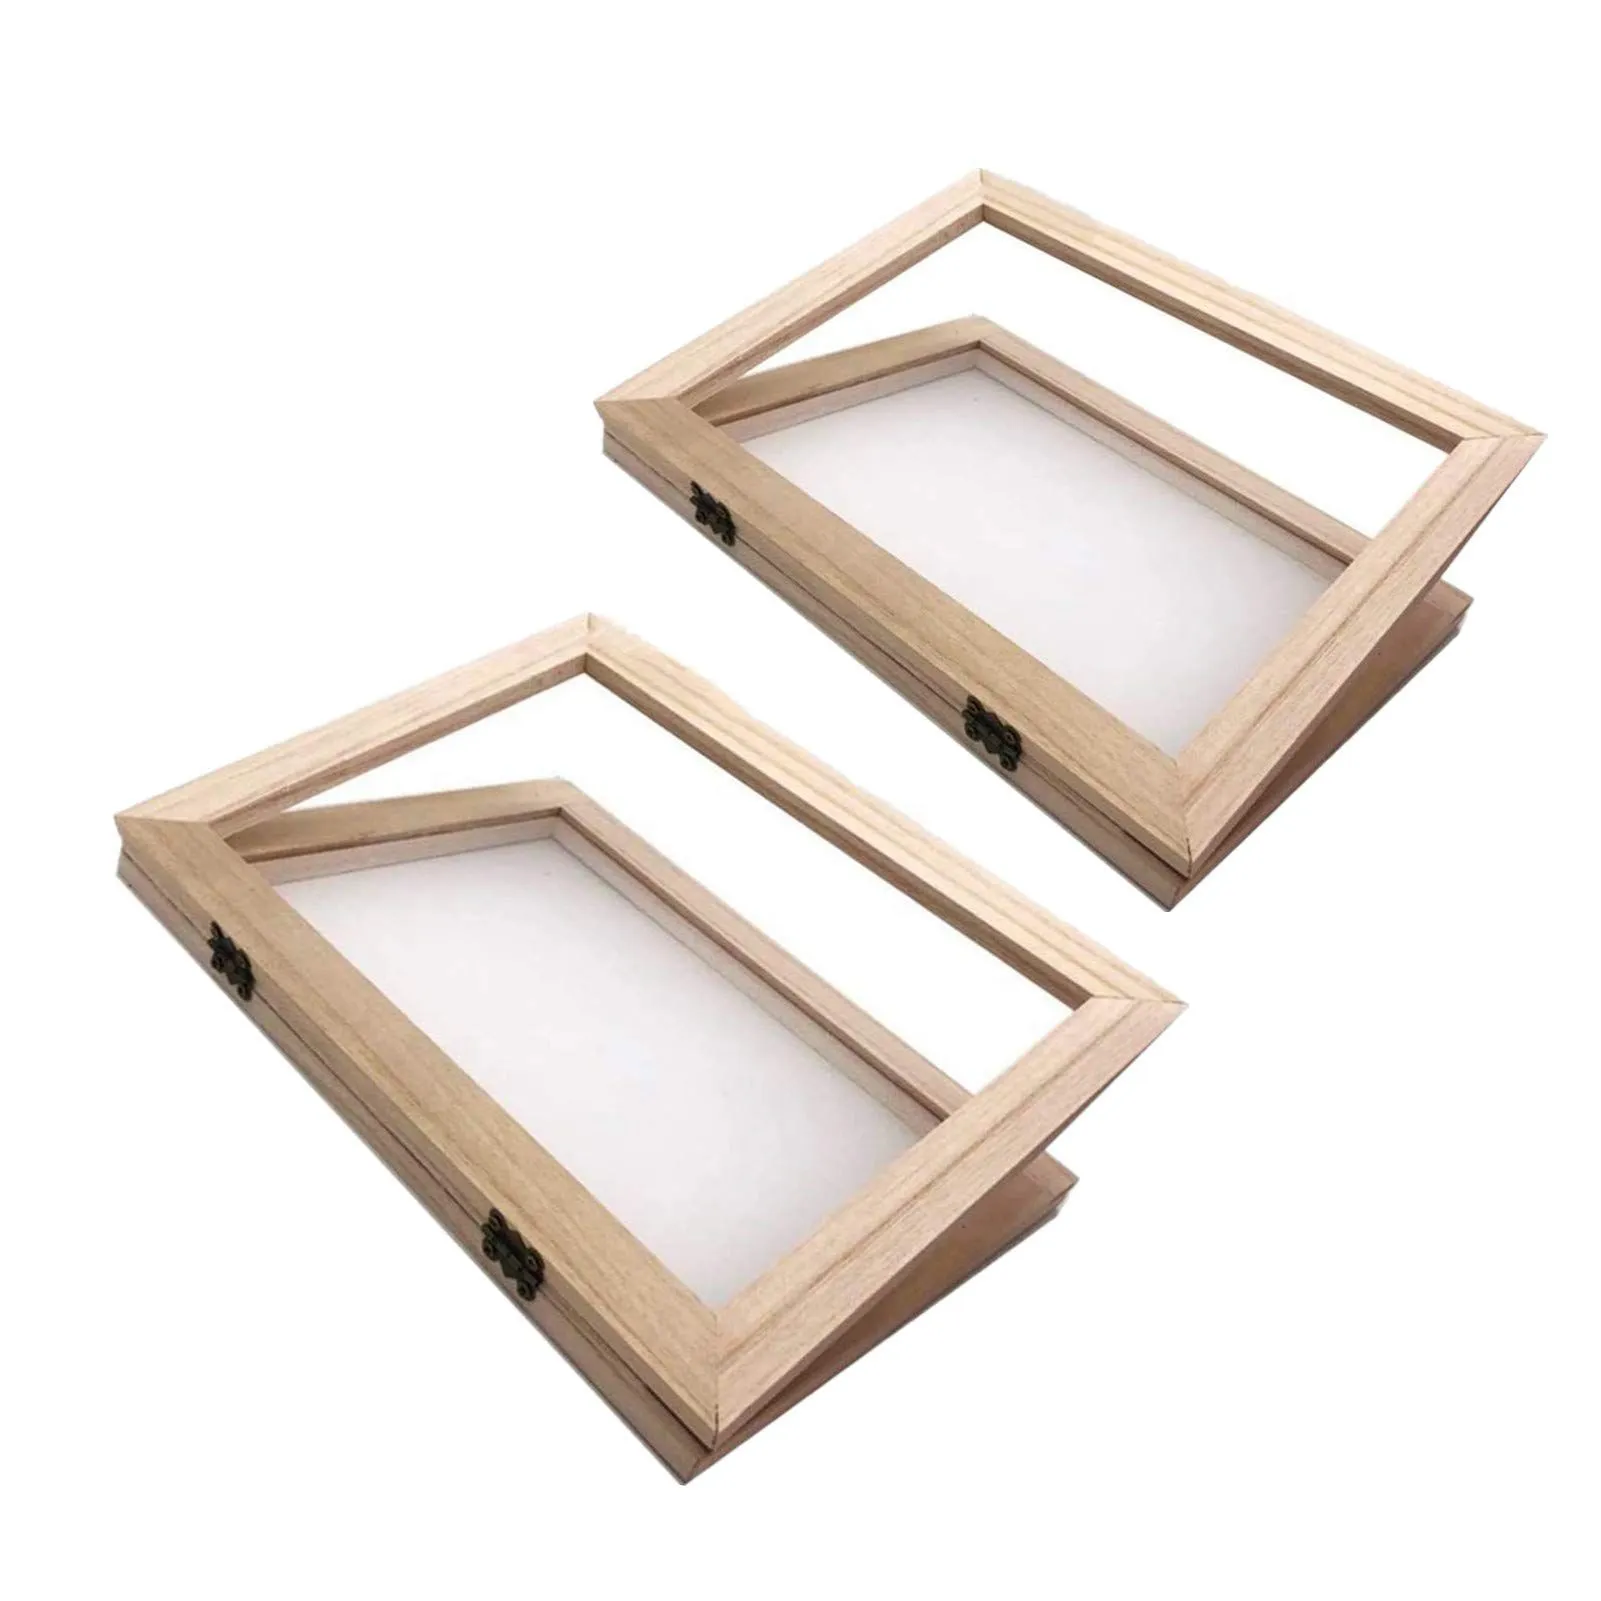 2 paquetes de moldes de madera para hacer papel, herramientas de malla con  madera natural para manualidades de papel y flores secas : Amazon.com.mx